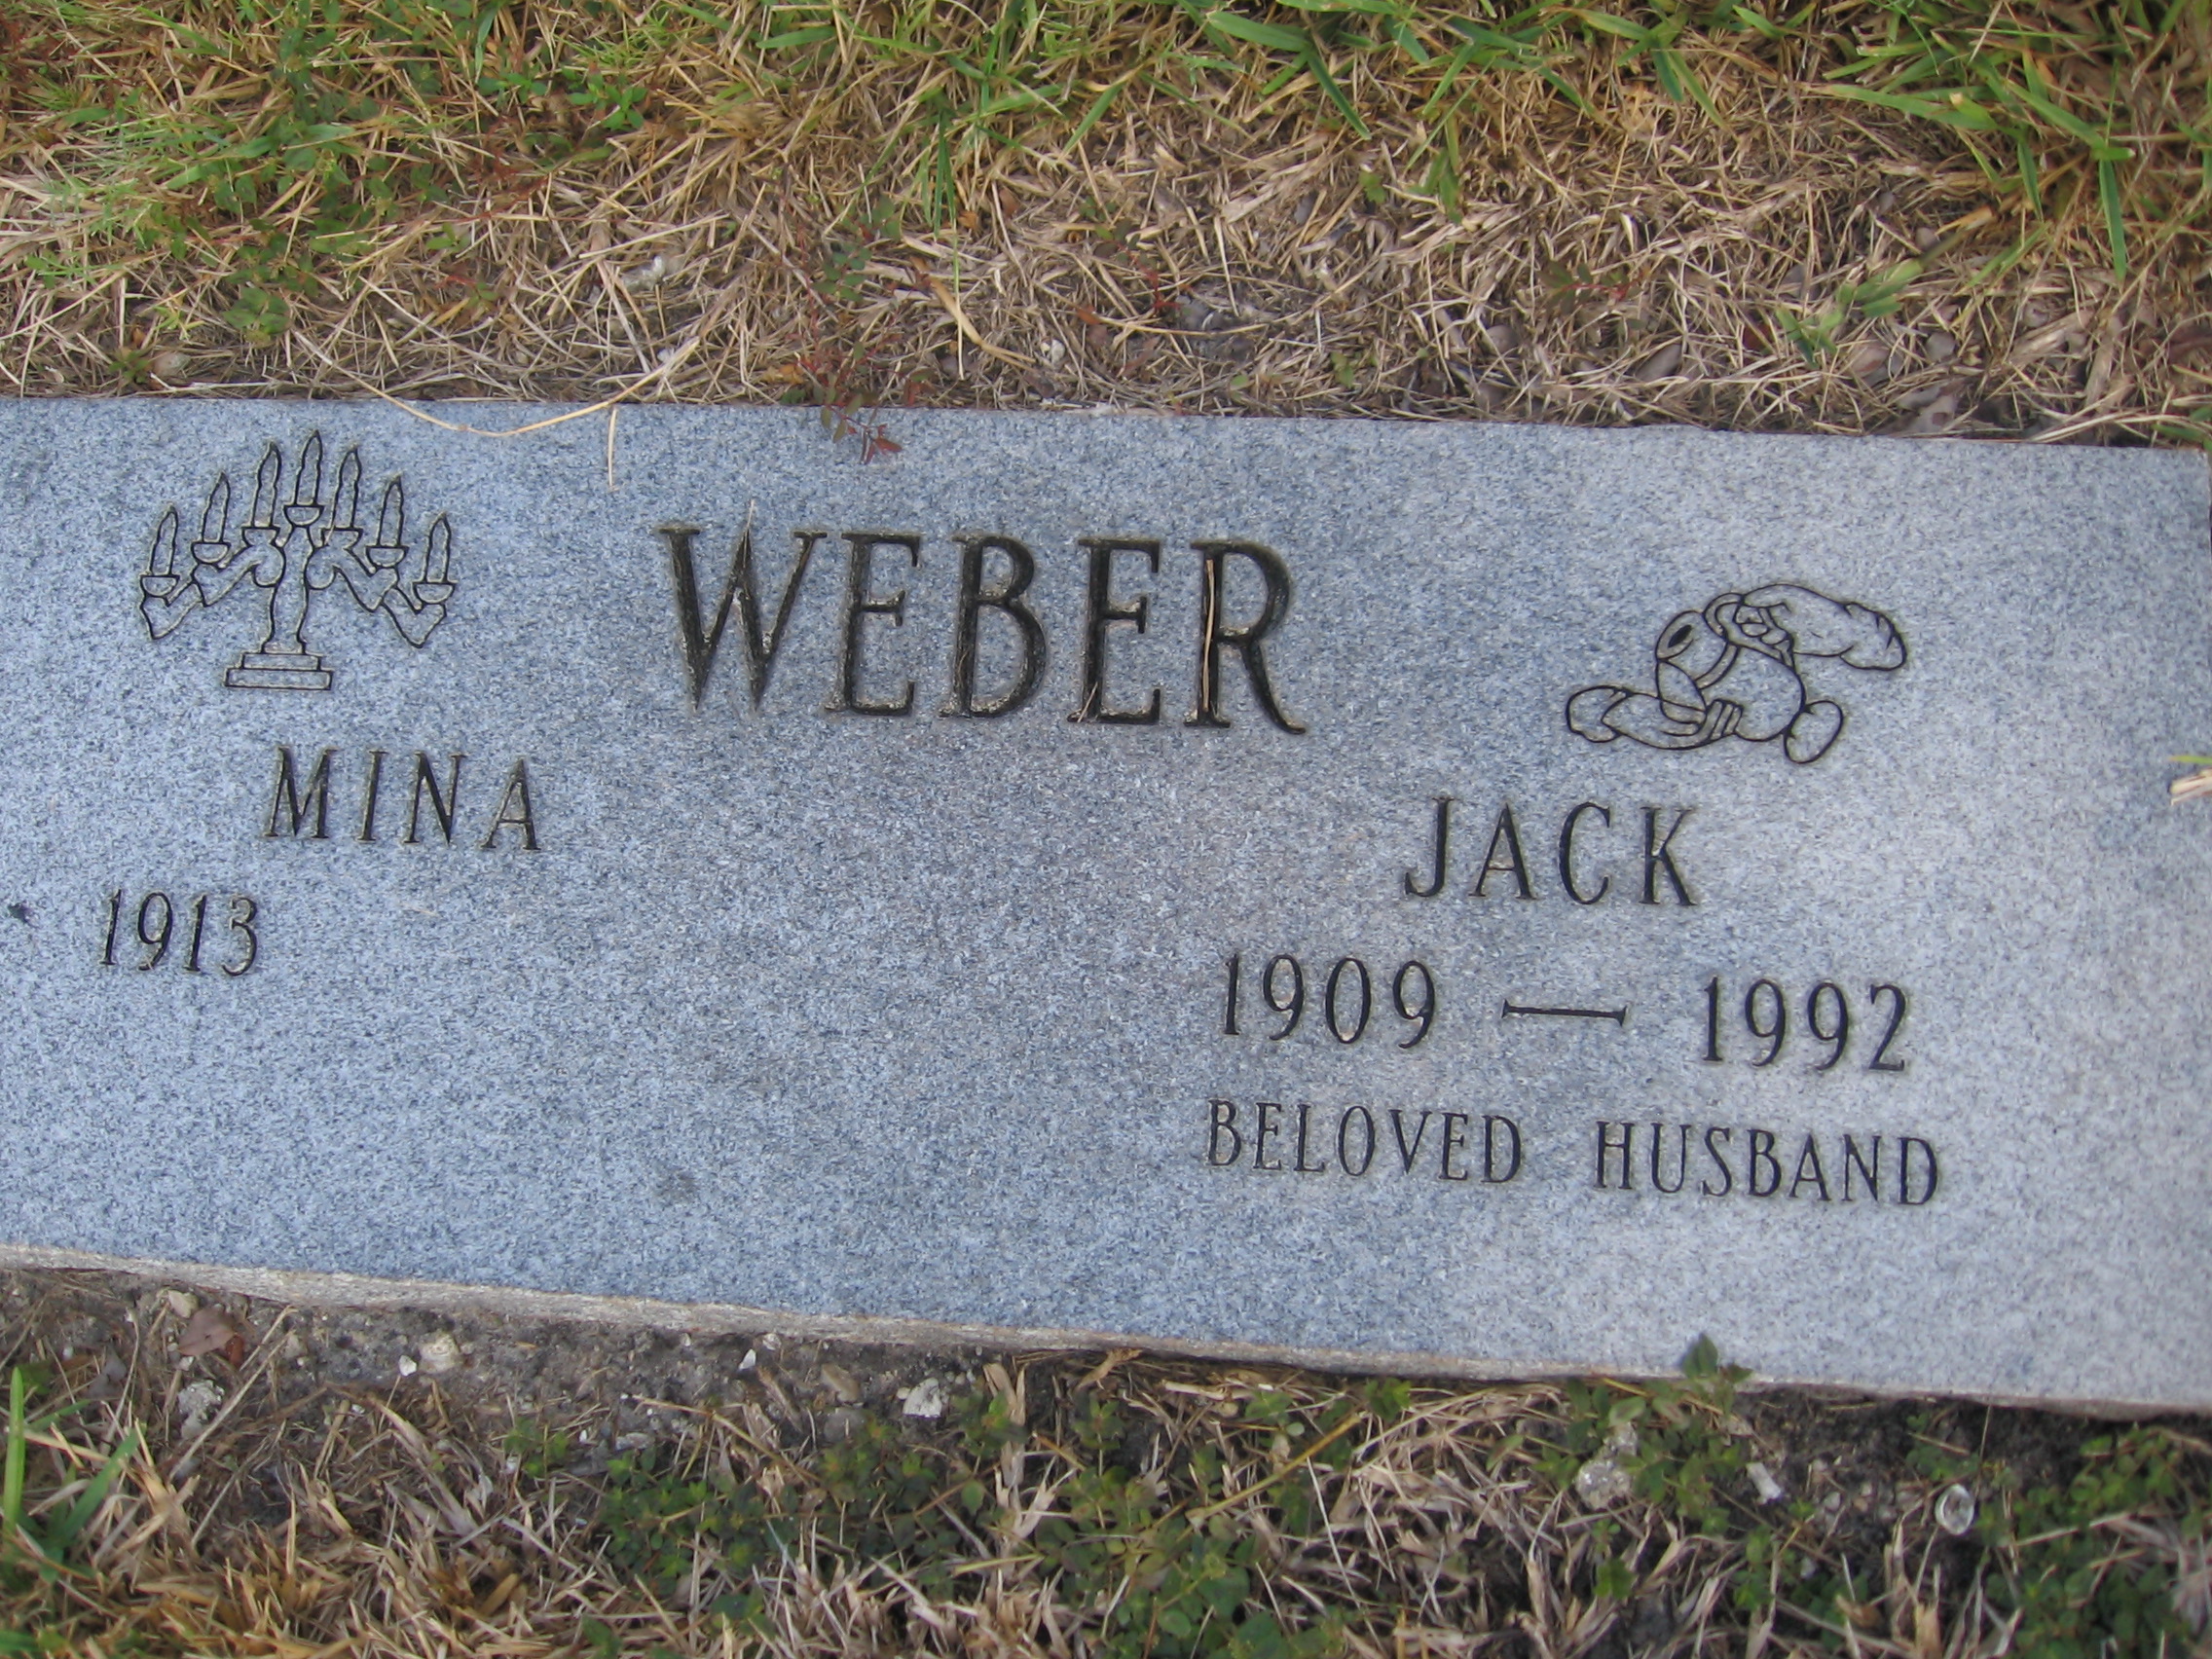 Jack Weber